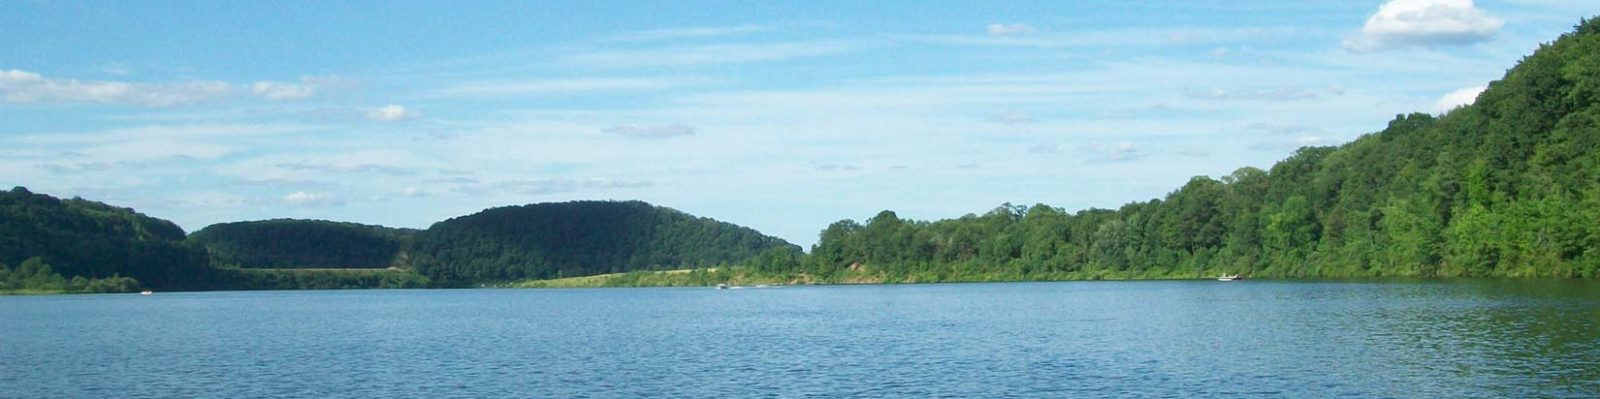 Curwensville Lake